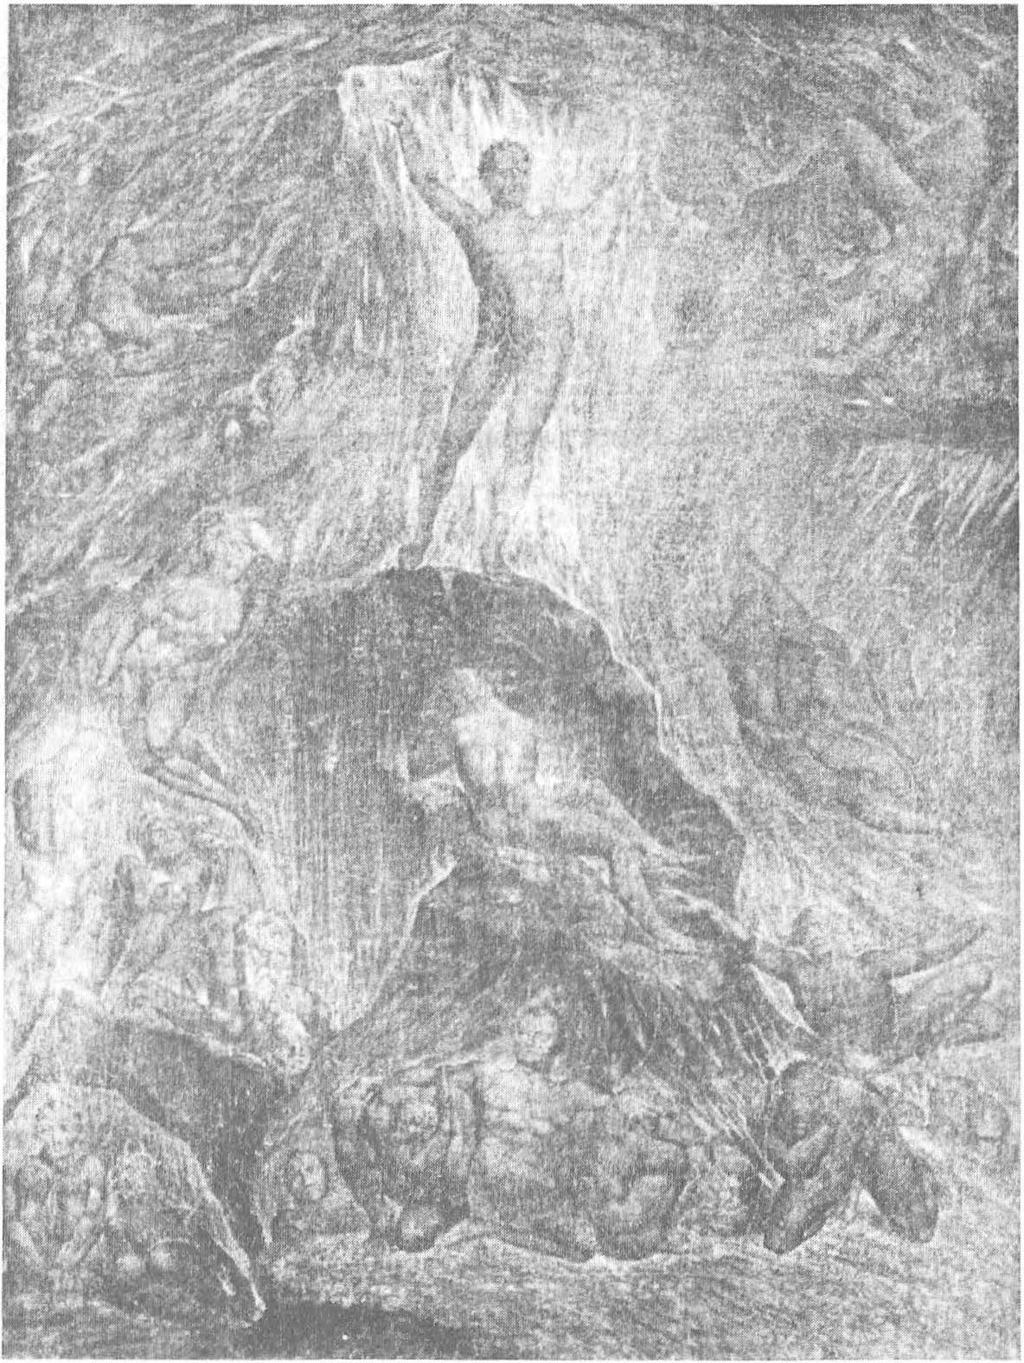 İlahi Gazap Şekil 1.2: William Blake, Satan Calling ııp His Legion [Lejyonunu Çağıran Şeytani, 1805.